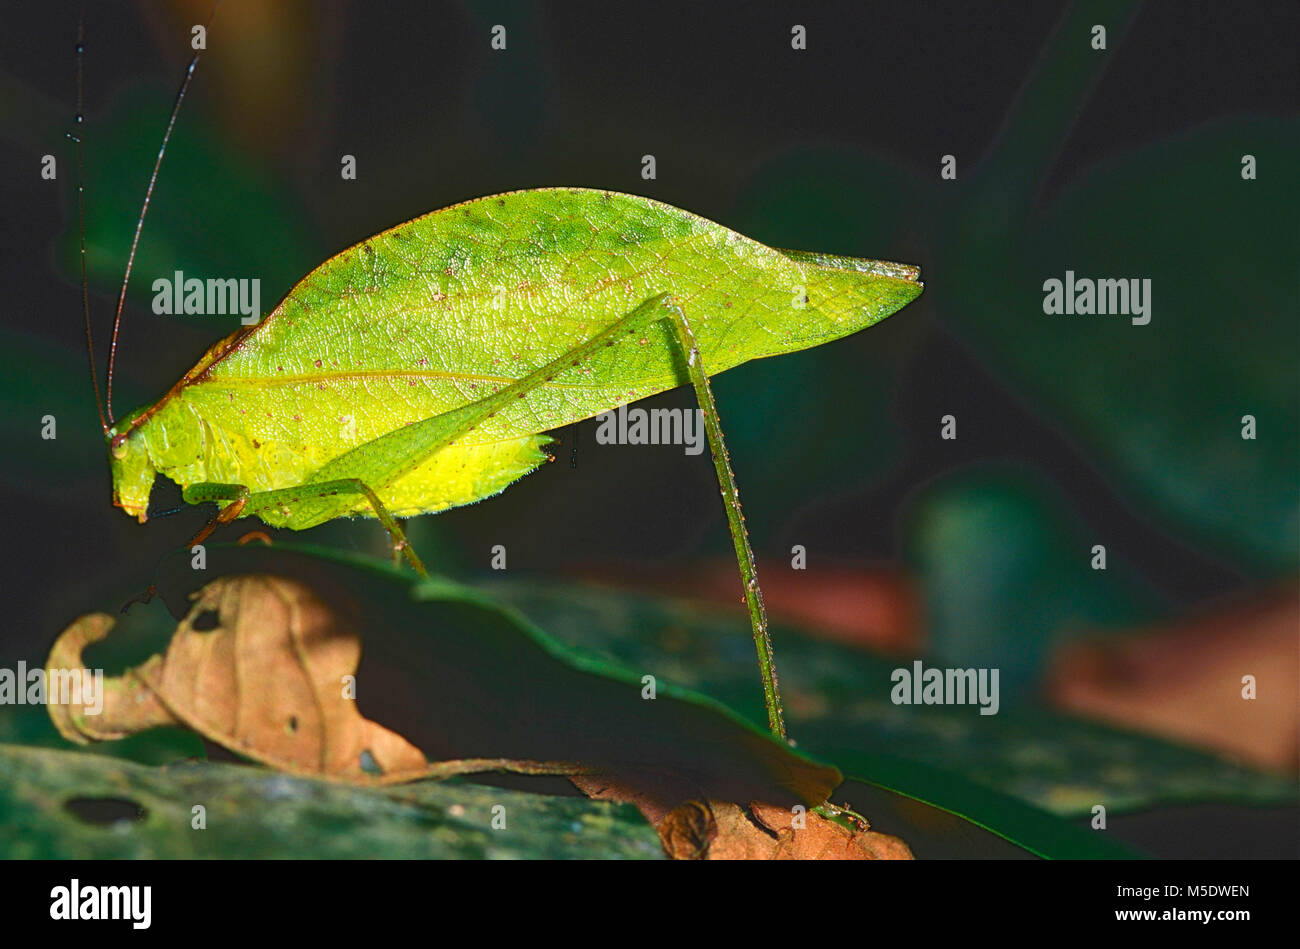 Leaf-imiter Katydid, Orophus tesselatus, Tettigoniidae, Katydid, insecte, animal, Costa Rica Banque D'Images